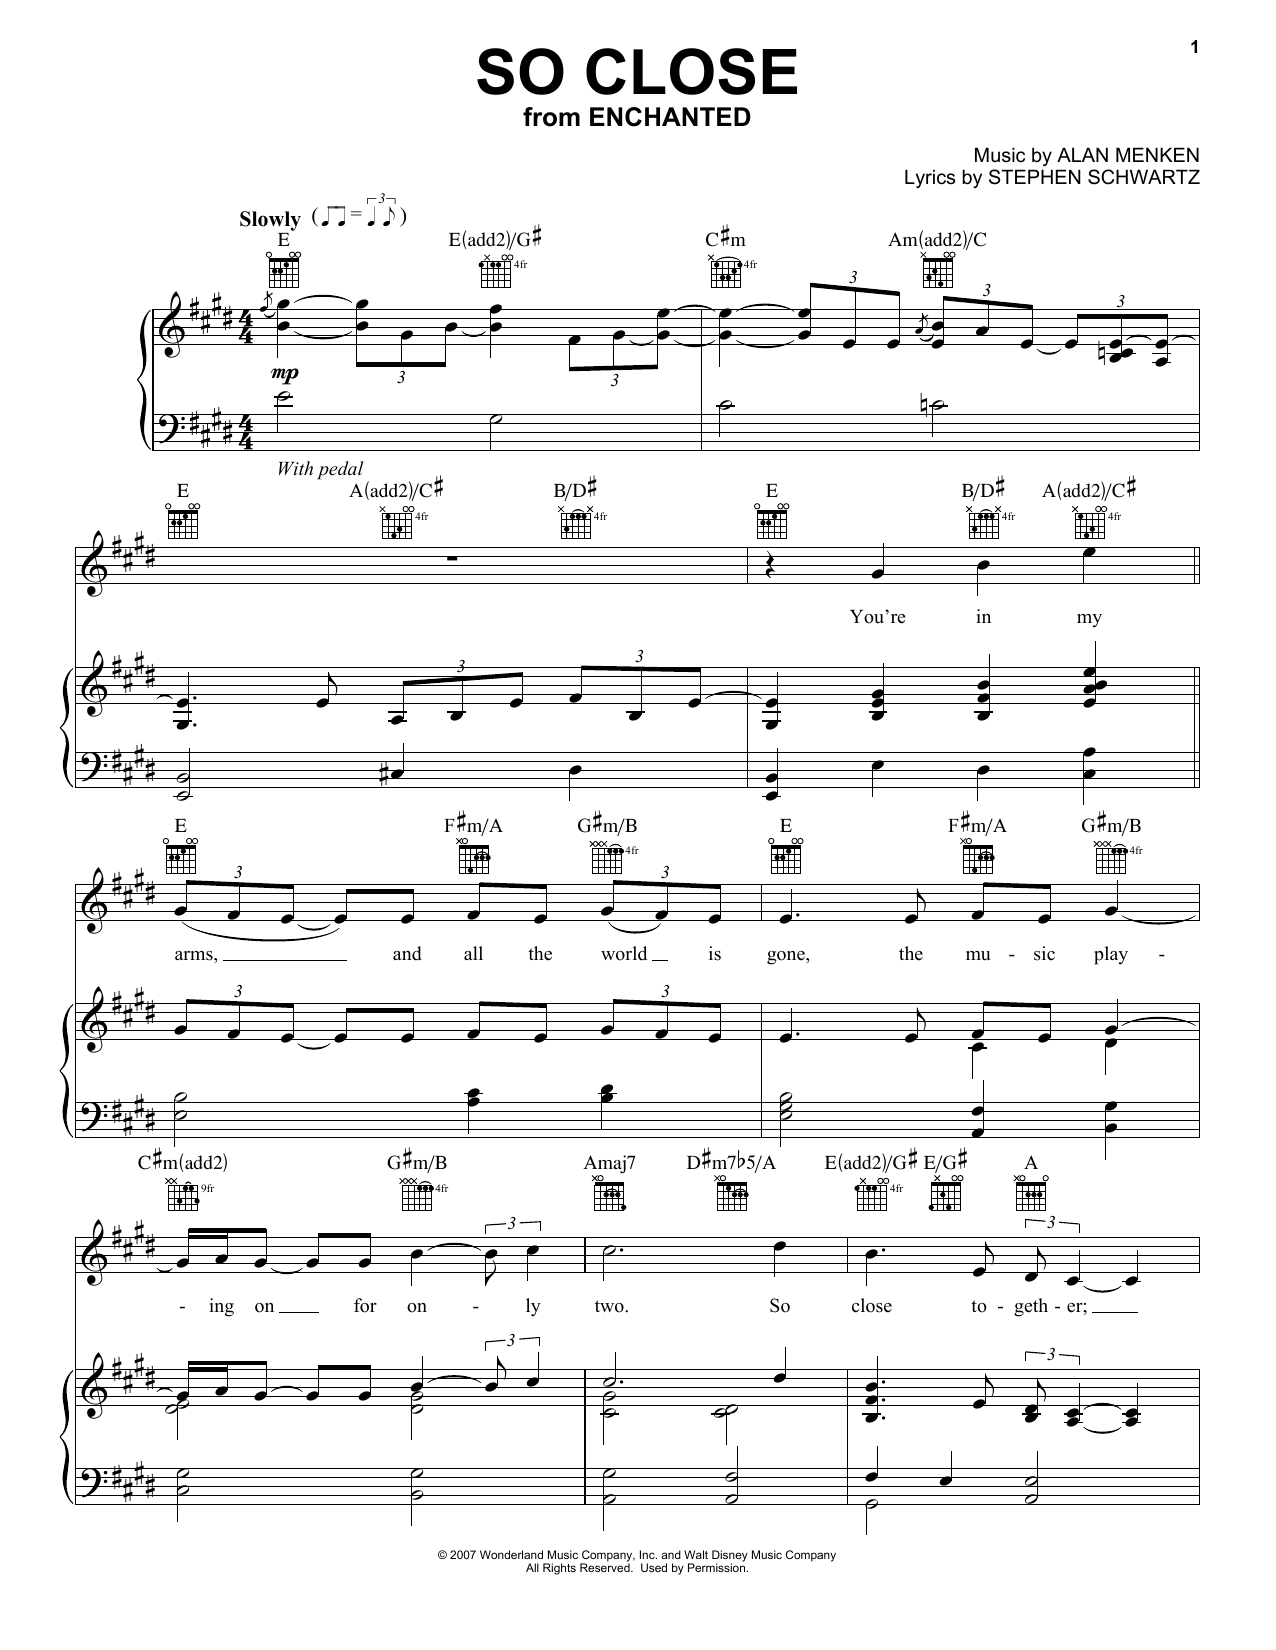 Alan Menken So Close Sheet Music Notes & Chords for Trumpet - Download or Print PDF